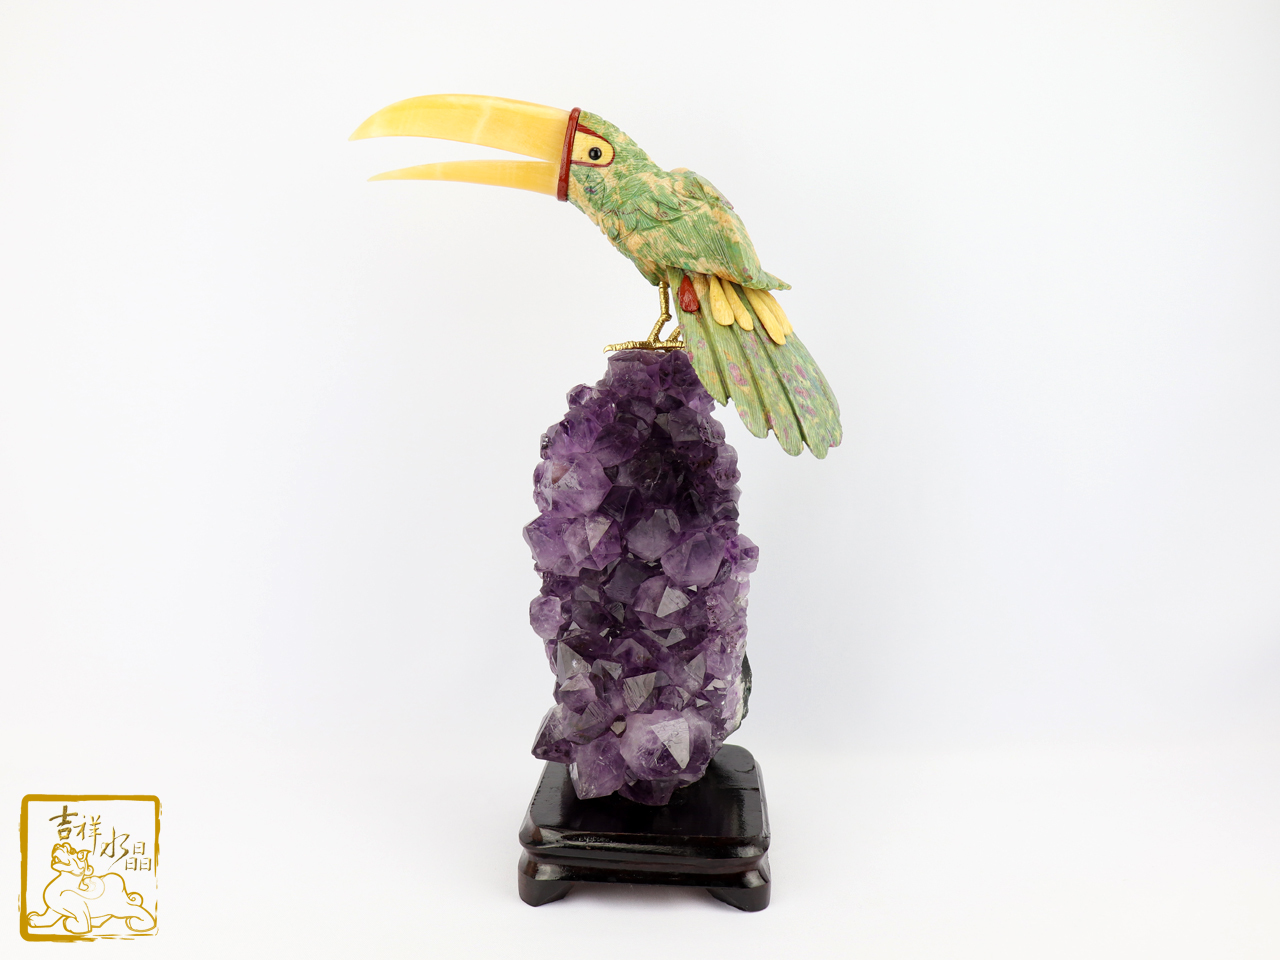 大嘴鳥水晶雕擺件 高26cm 嘴大吃四方錢財